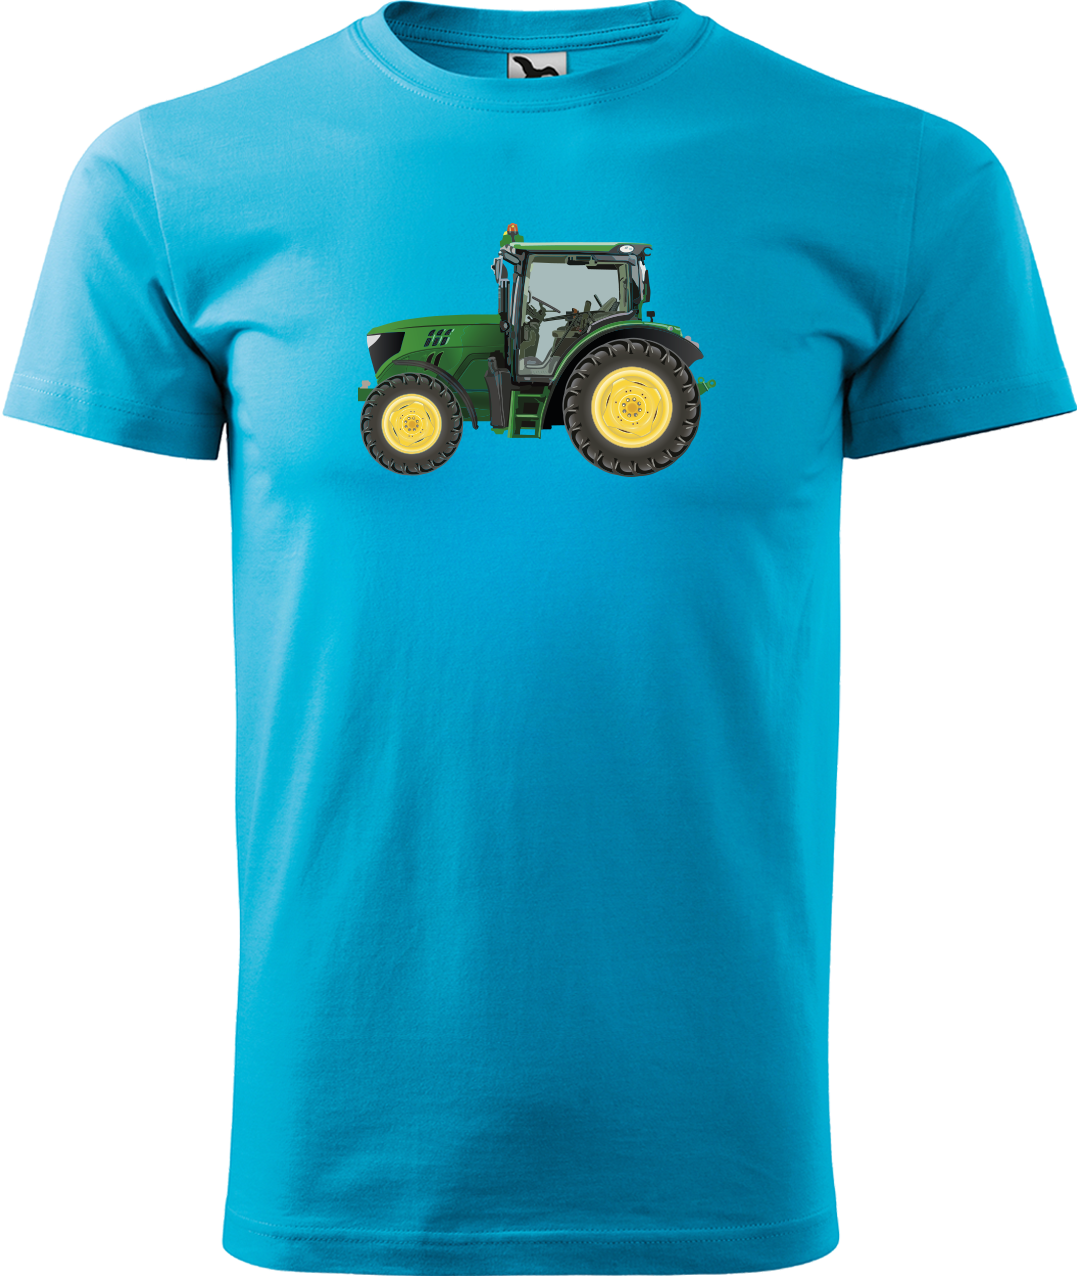 Tričko s traktorem - Zelený traktor Velikost: S, Barva: Tyrkysová (44)